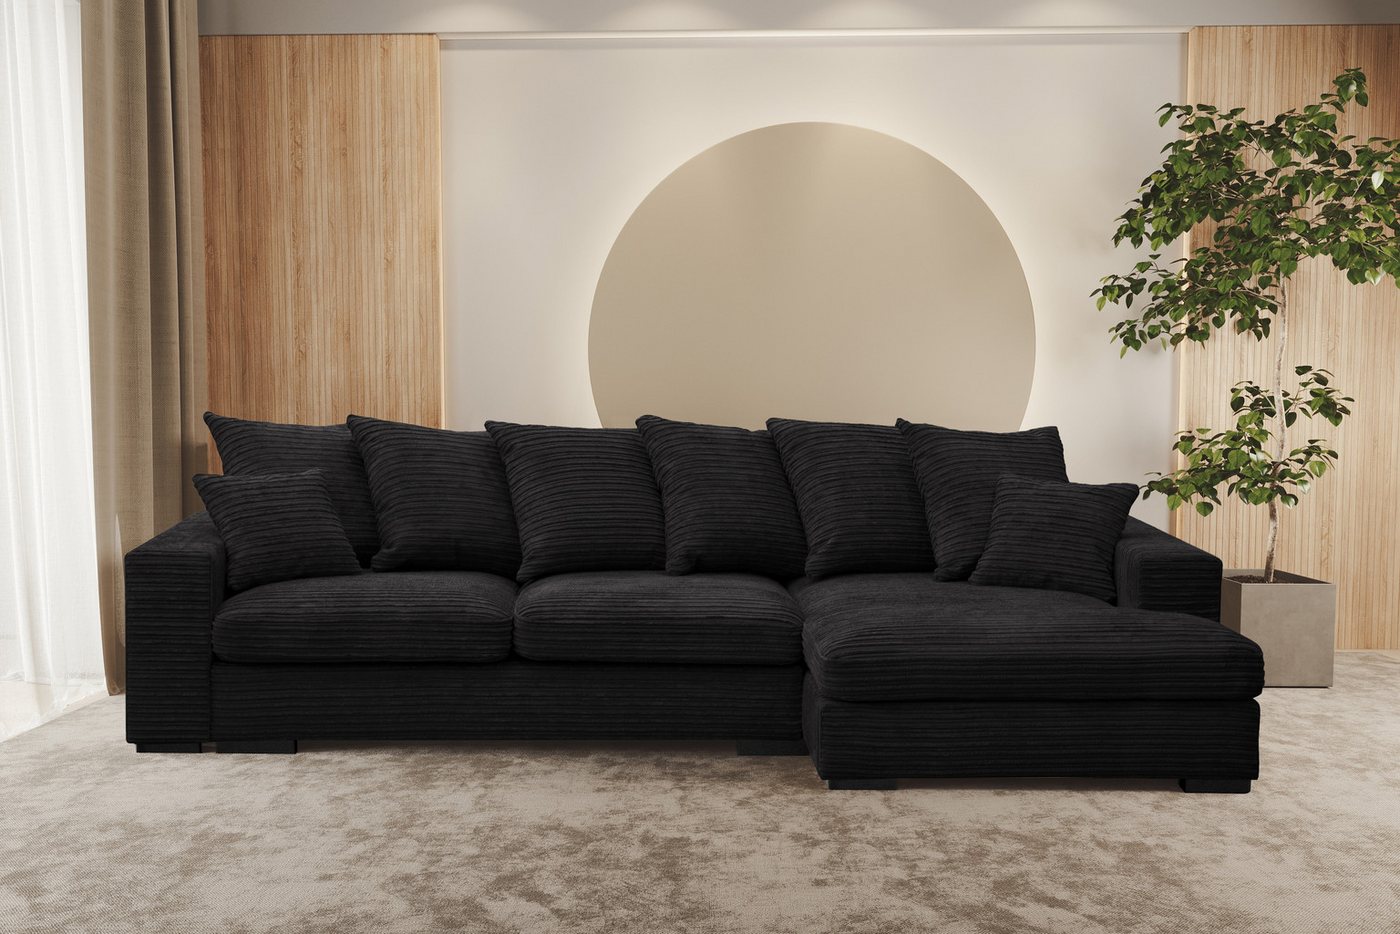 Kaiser Möbel Ottomane Ecksofa Sofa L-form, Couch L-form Gabon stoff Zoom Ottomane von Kaiser Möbel